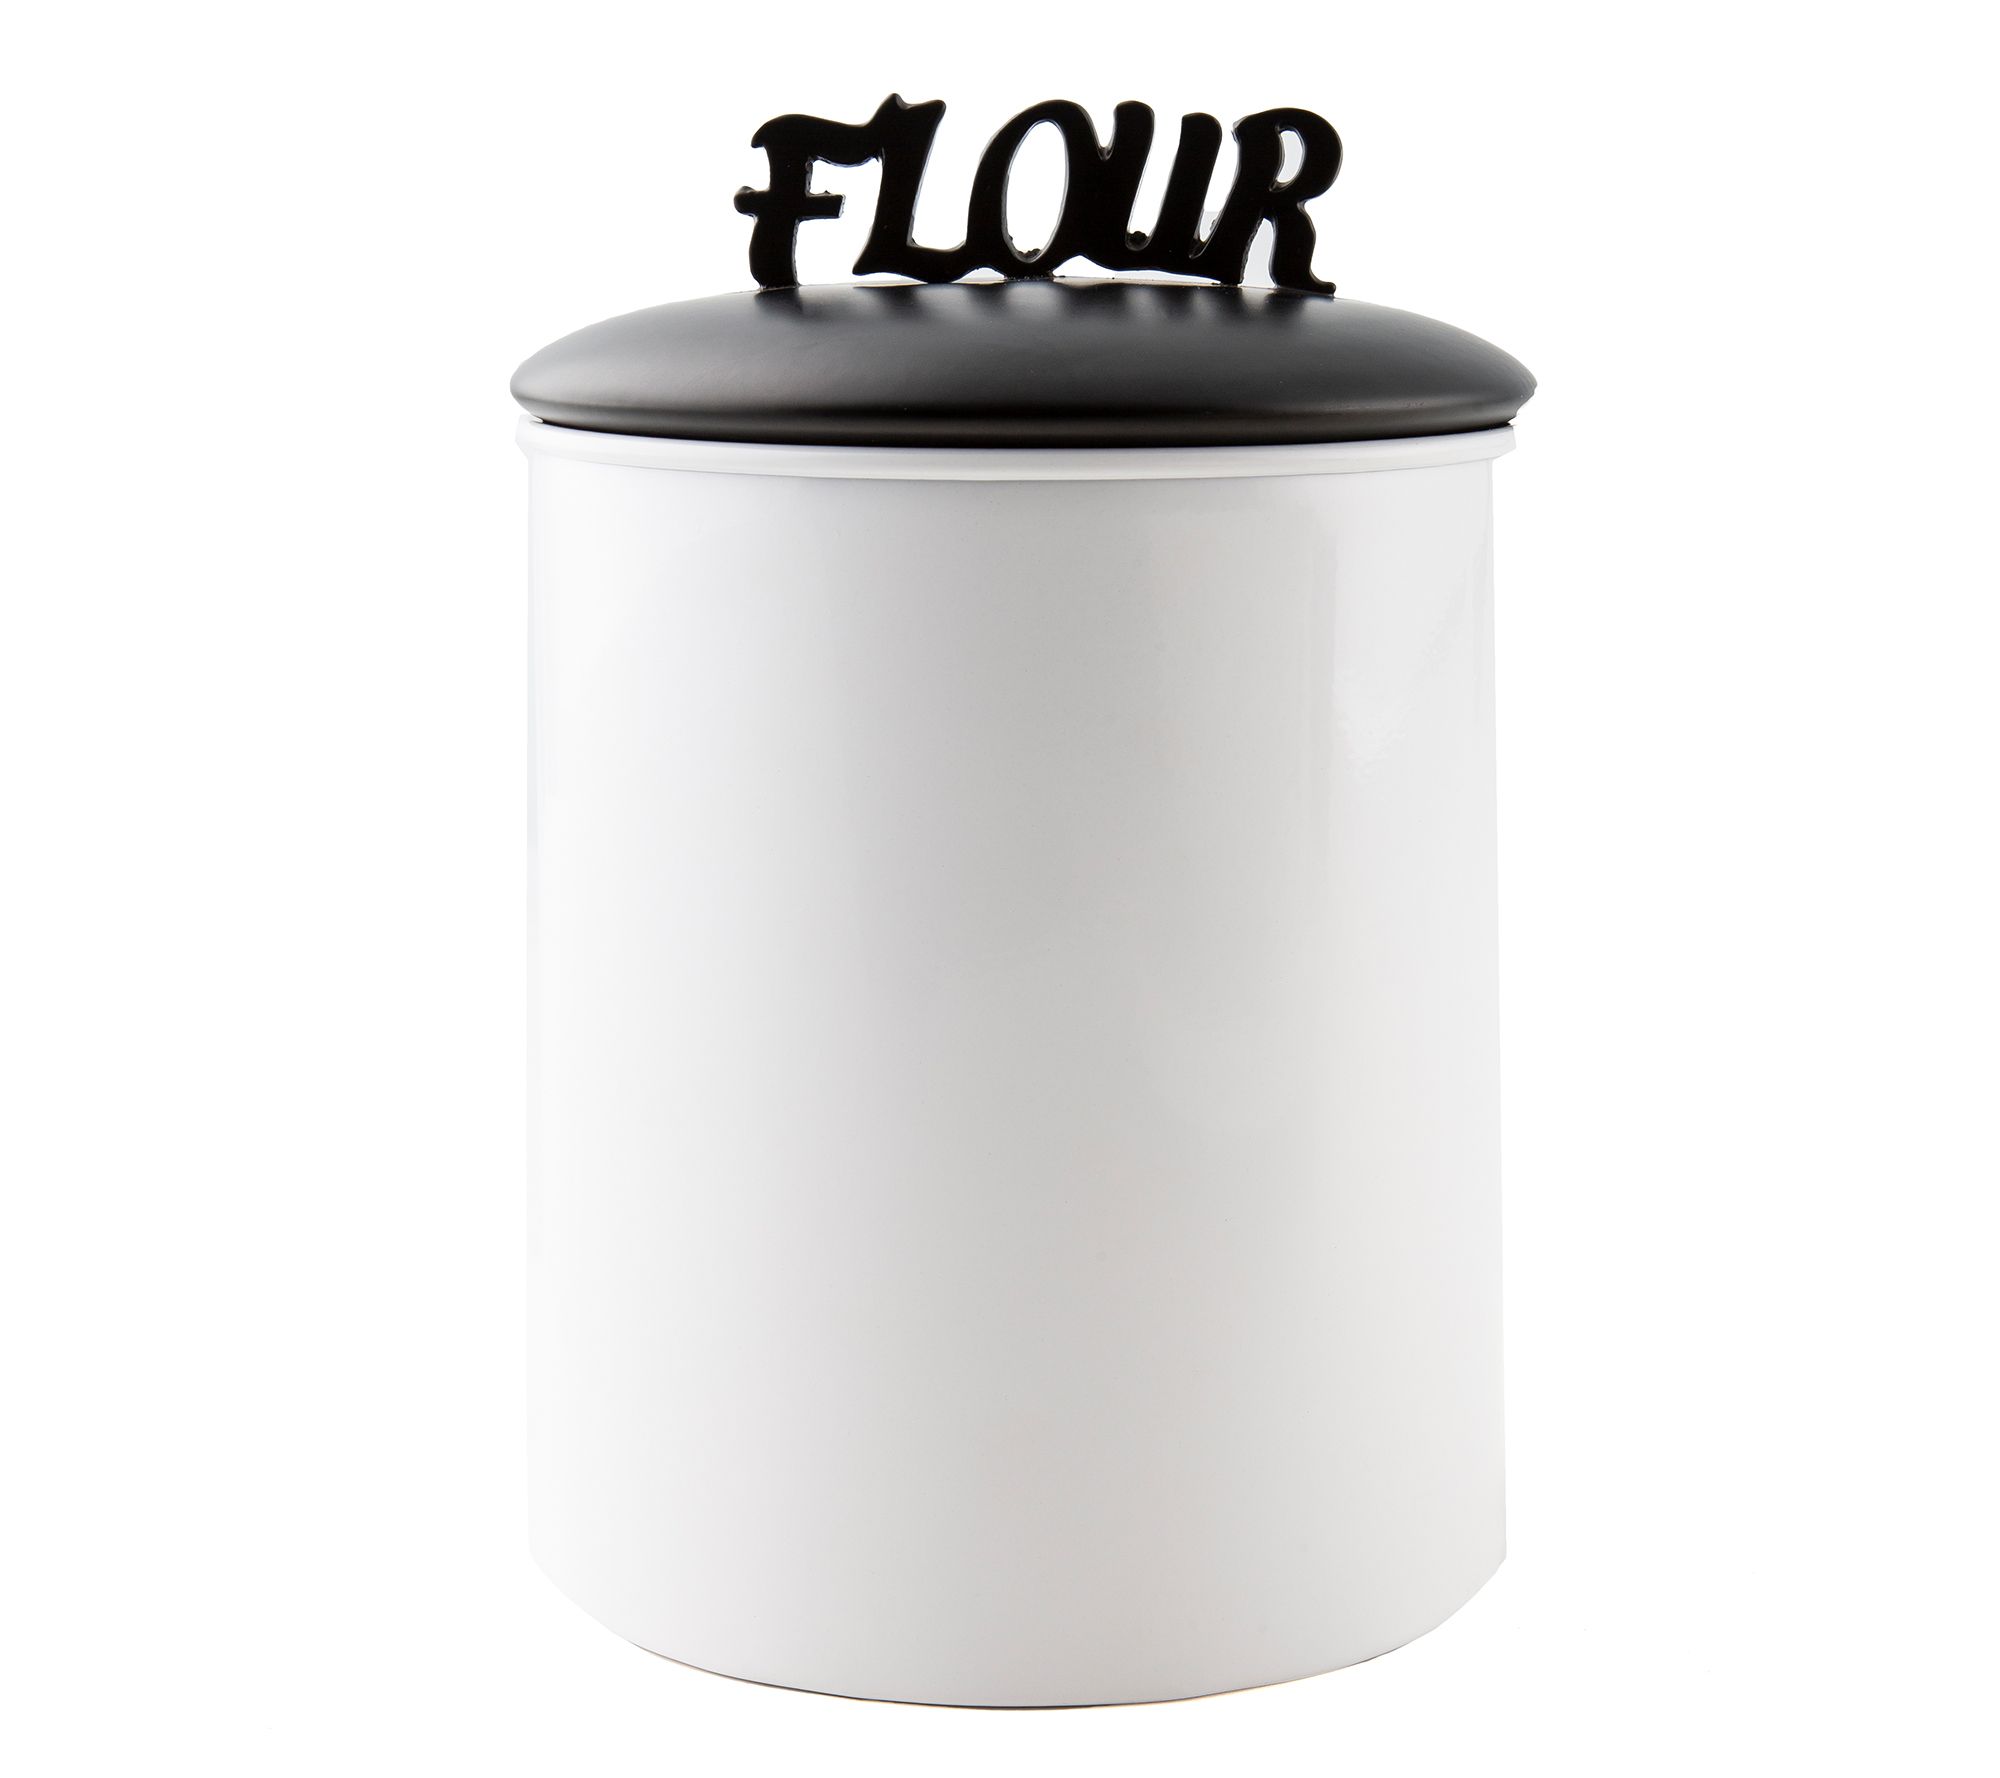 Flour Canister